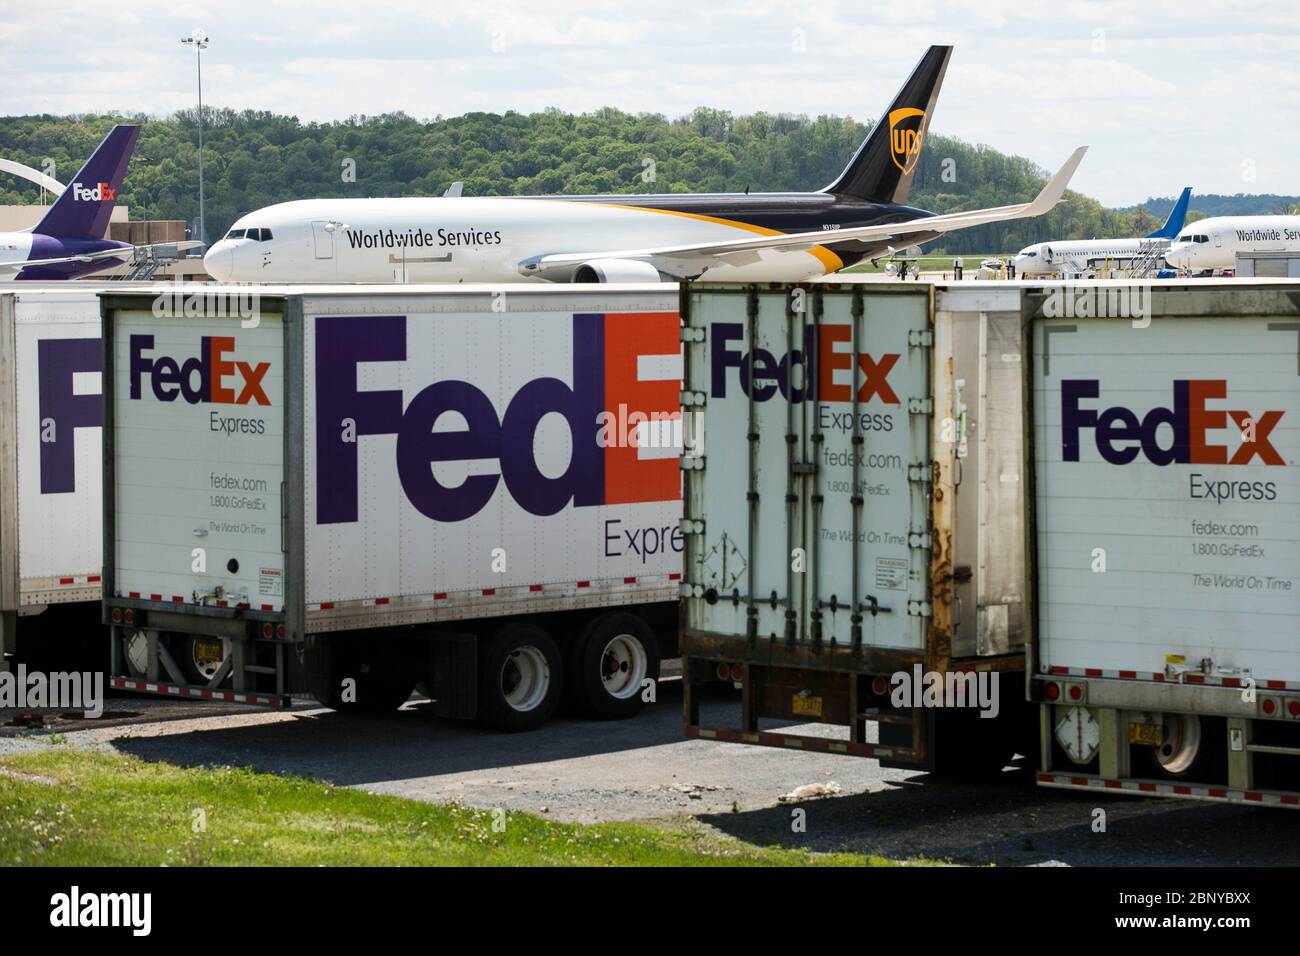 I rimorchi FedEx Express Truck sono visti di fronte a un aeromobile UPS Airlines United Parcel Service a Middletown, Pennsylvania, il 4 maggio 2020. Foto Stock